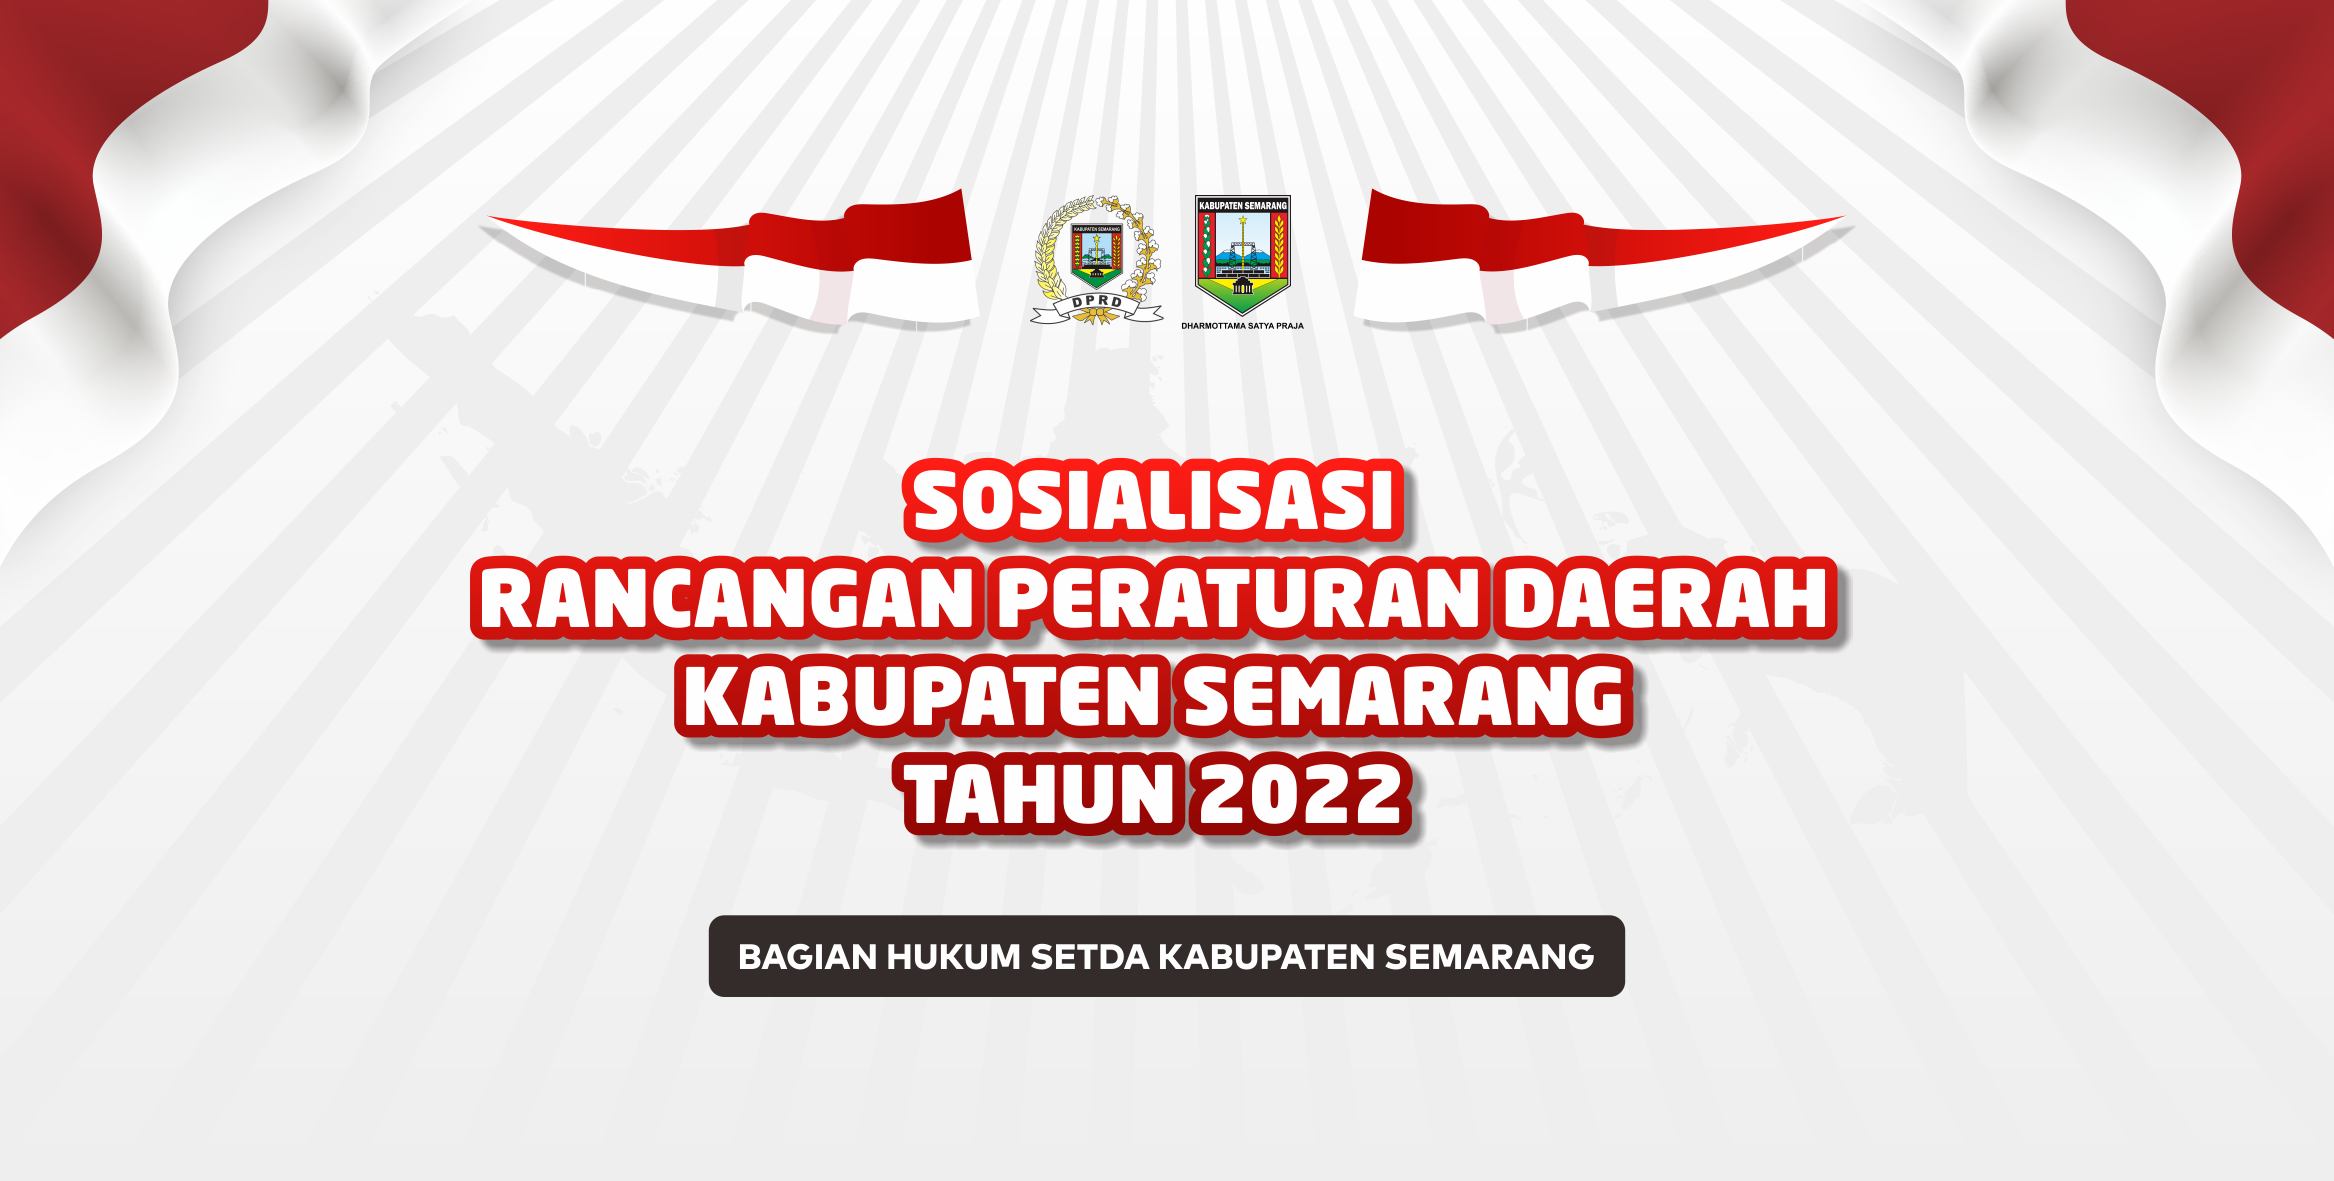 Sosialisasi Raperda Kabupaten Semarang Tahun 2022 Di Kecamatan Suruh, Getasan, Tuntang Dan Kaliwungu